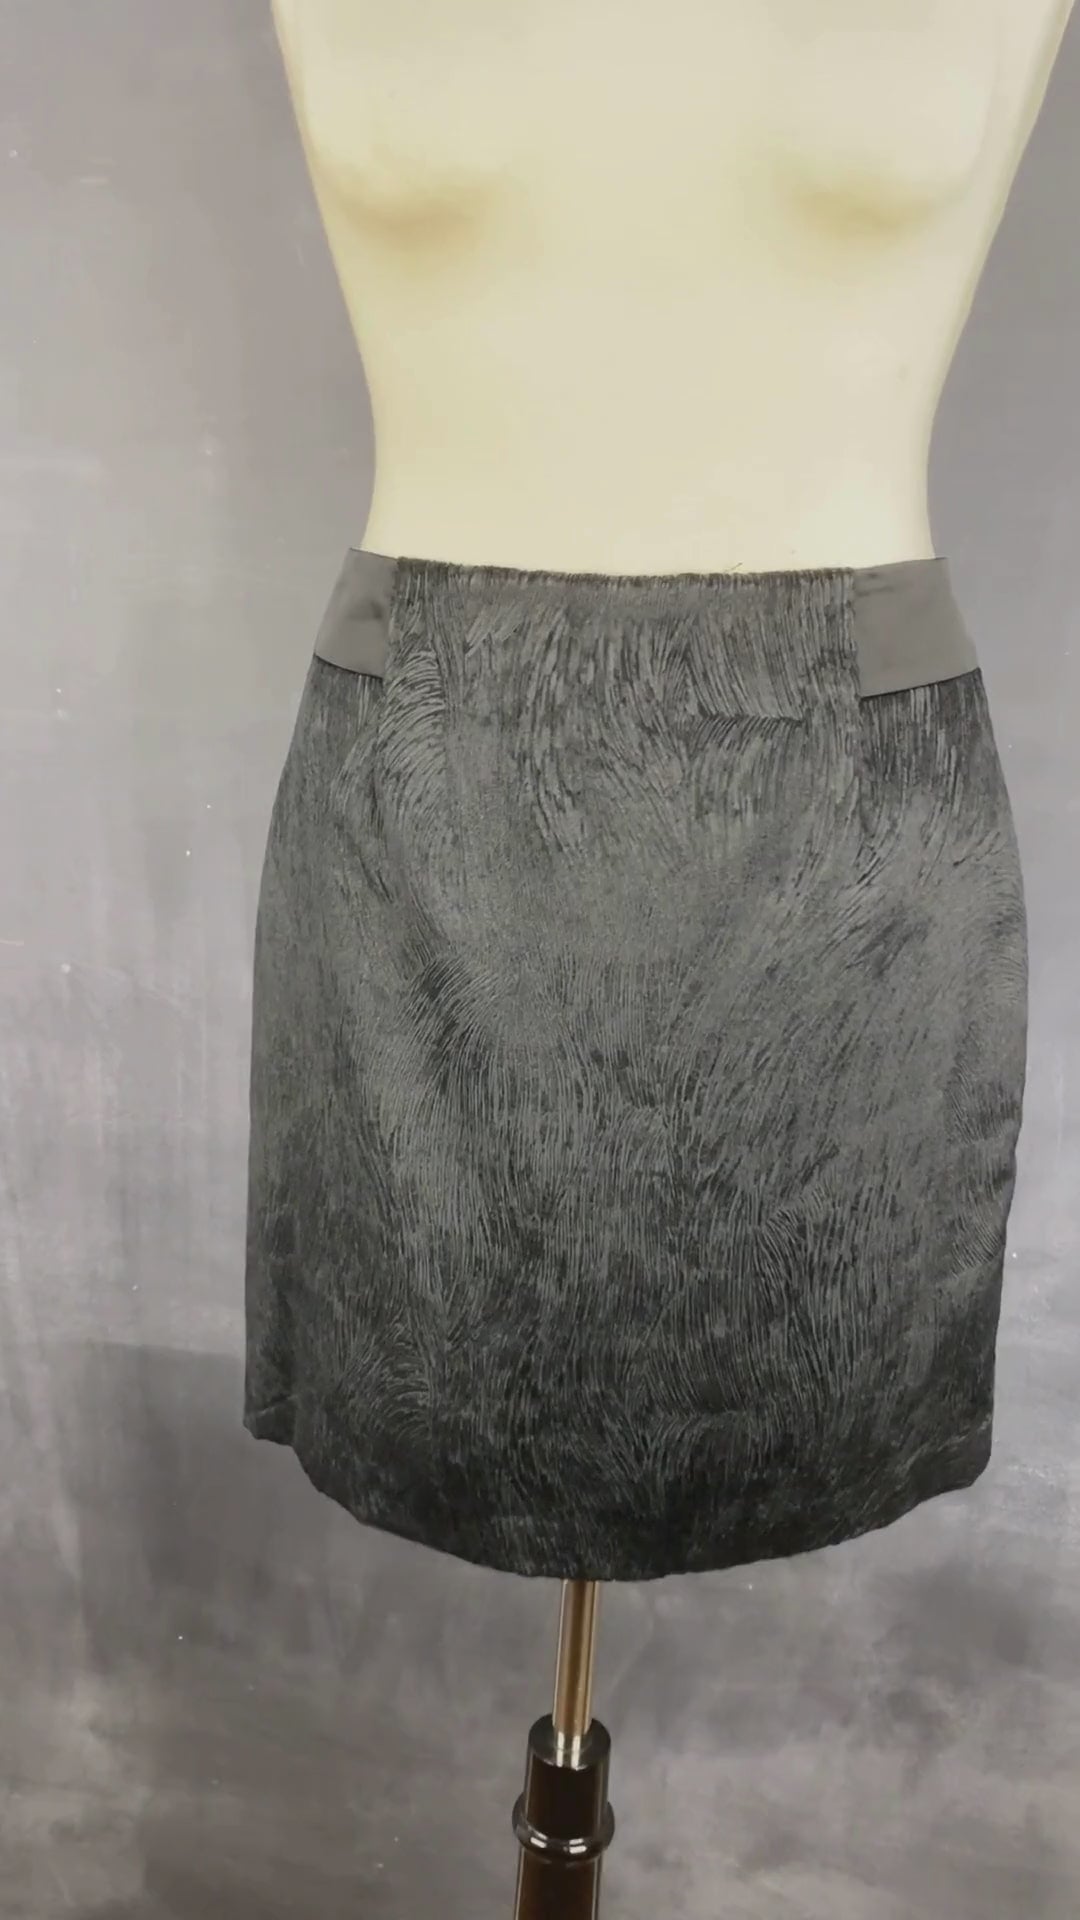 Jupe noire chic texturée Tristan, taille 6. Vue de la vidéo qui présente tous les détails de la jupe.